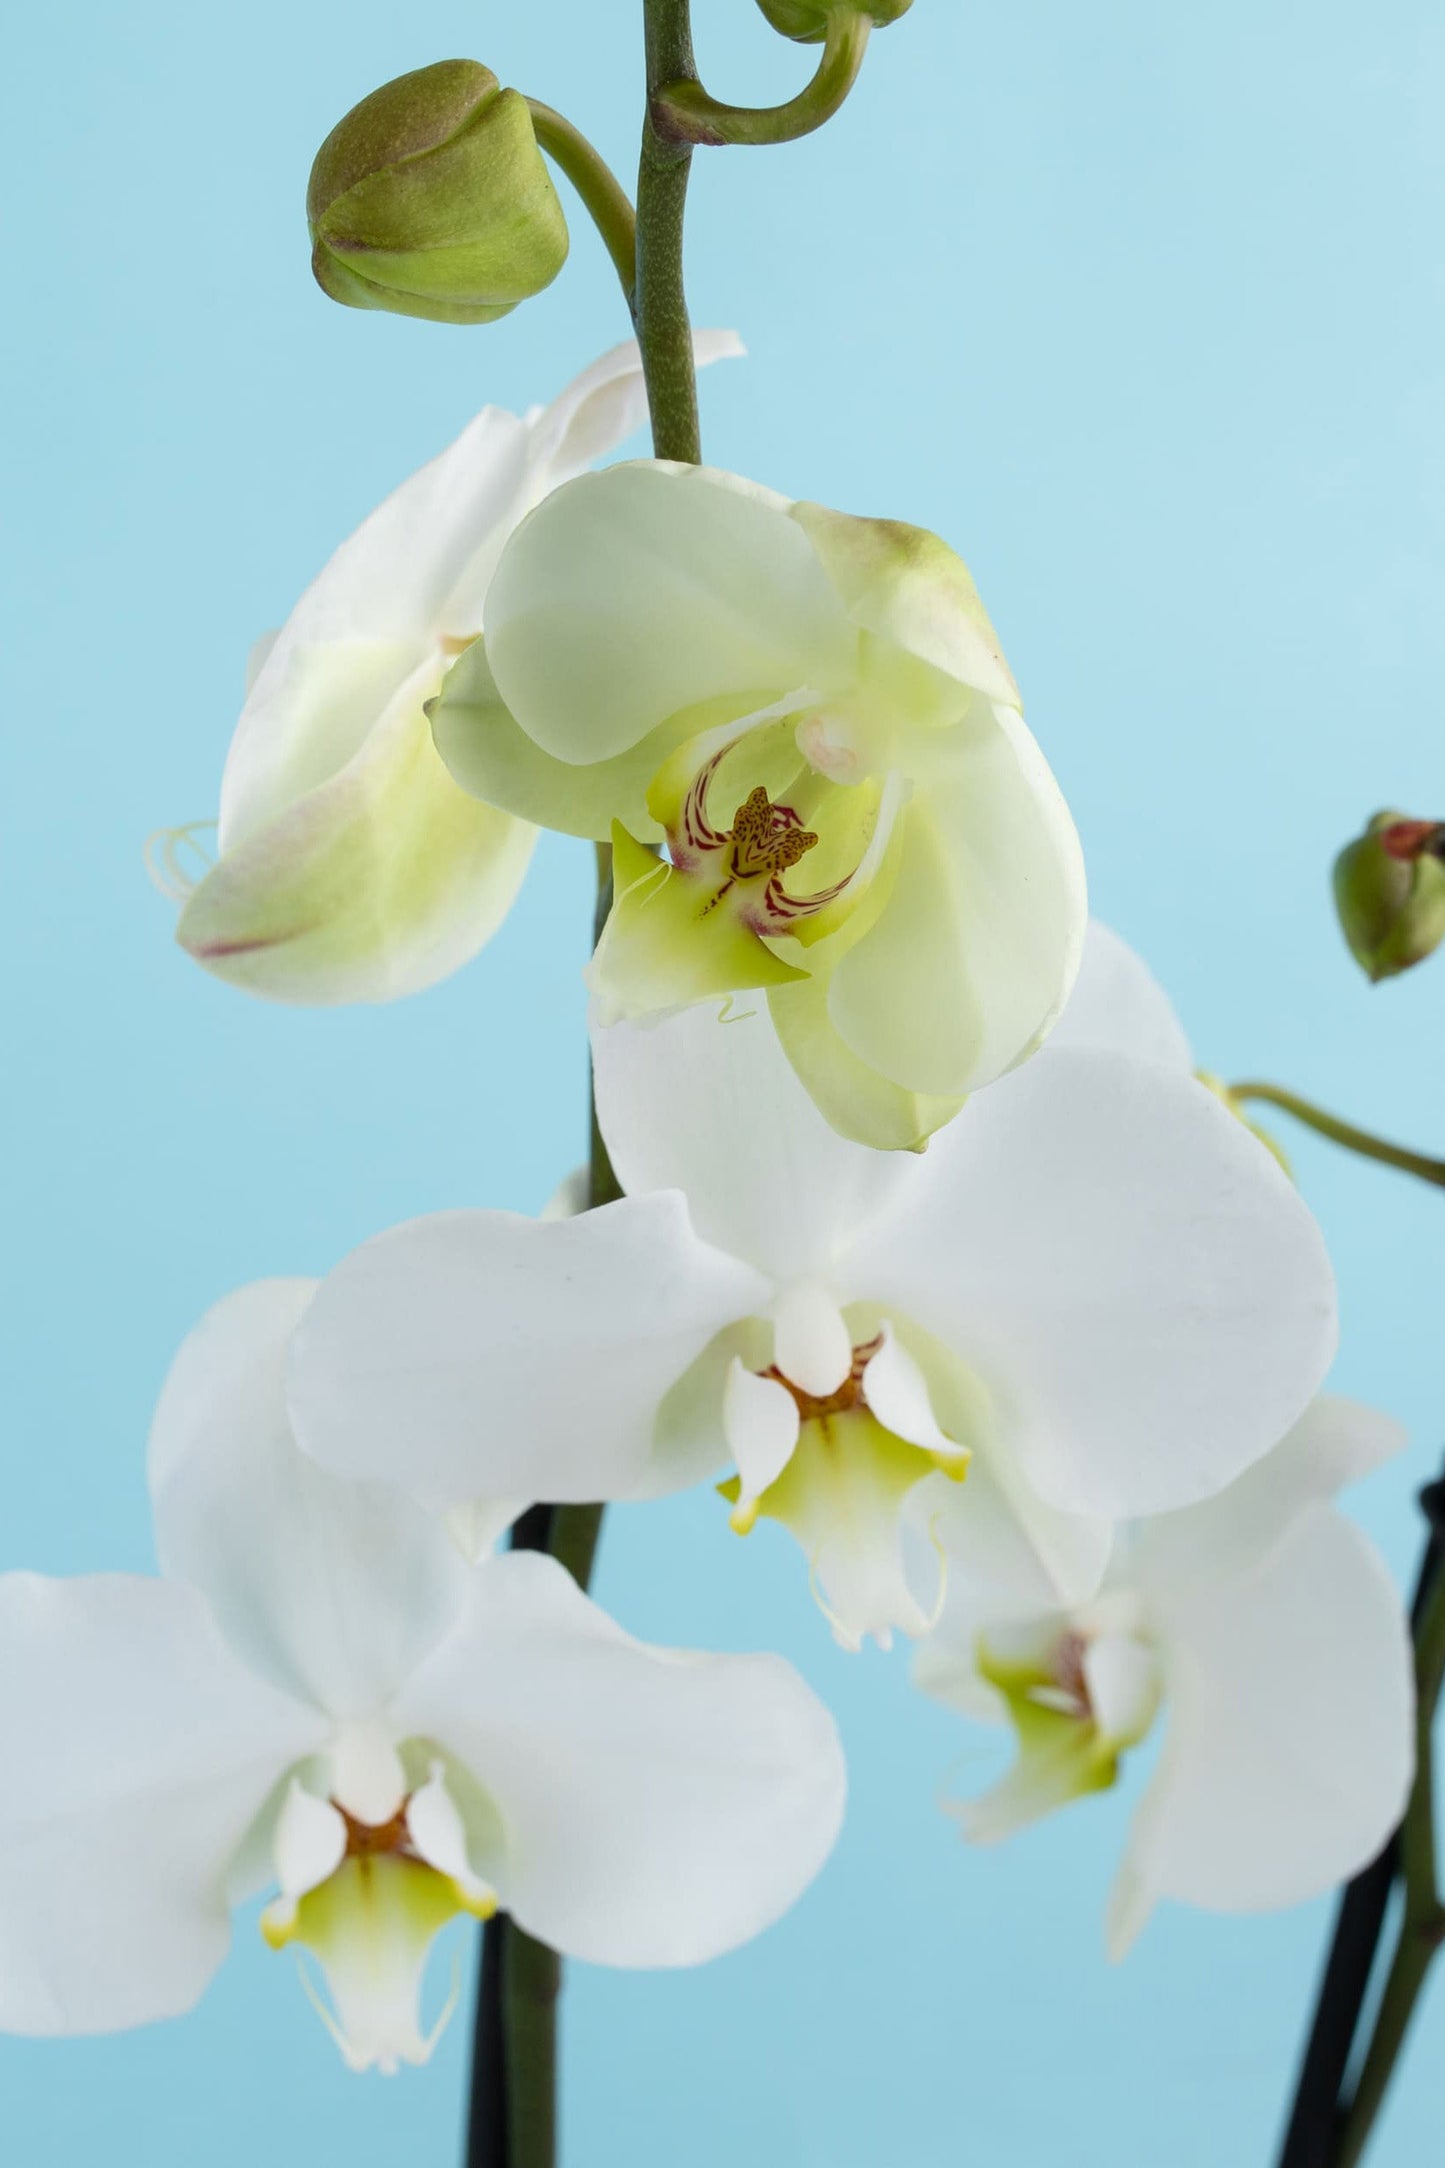 Remedios Varo MOM - Orquídea con Maceta Blanca